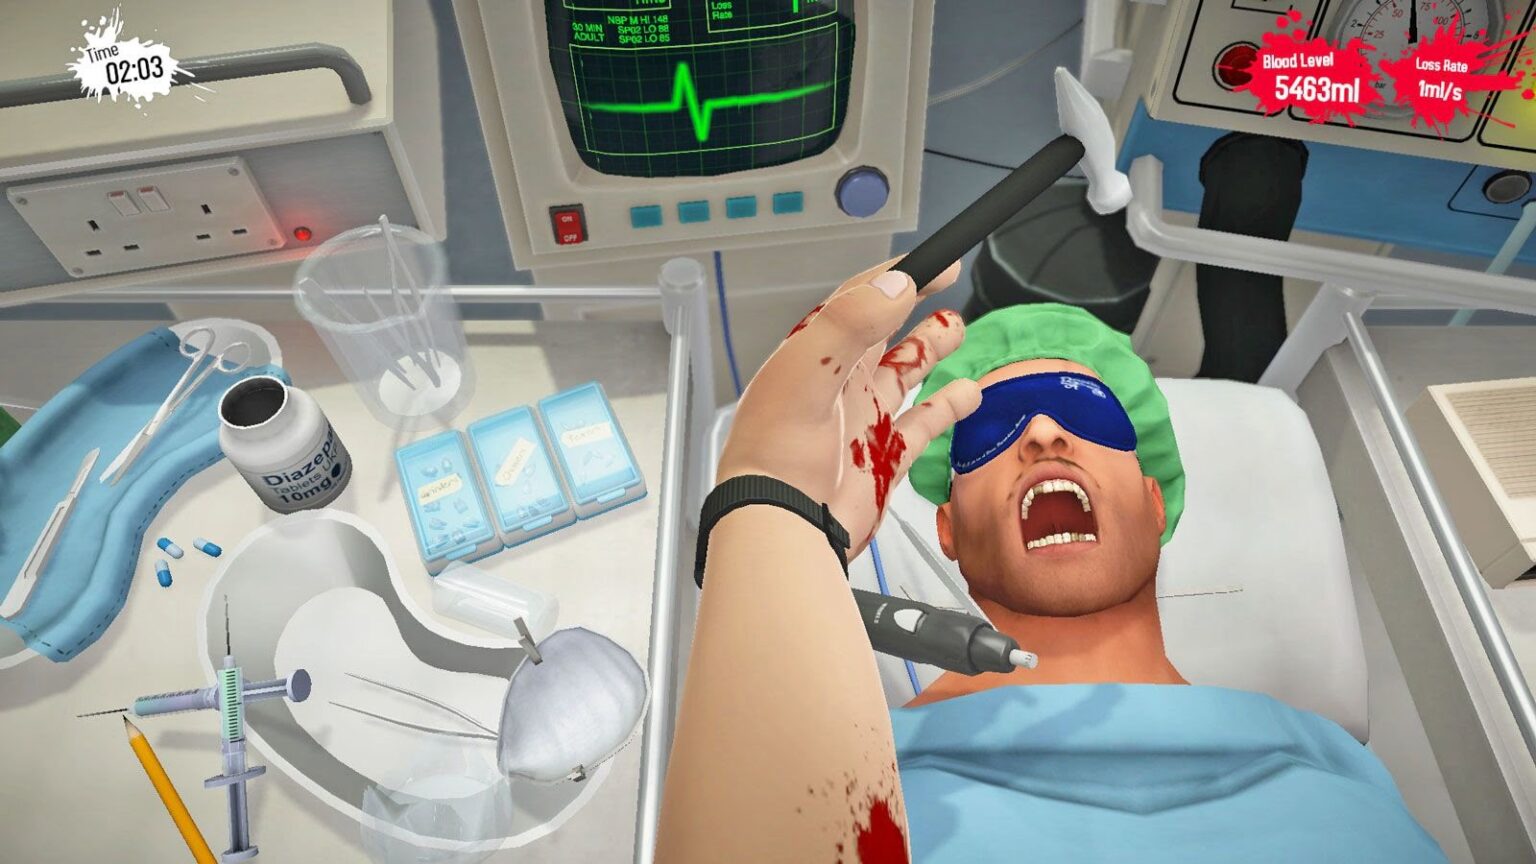 surgeon simulator cpr edition gamestop